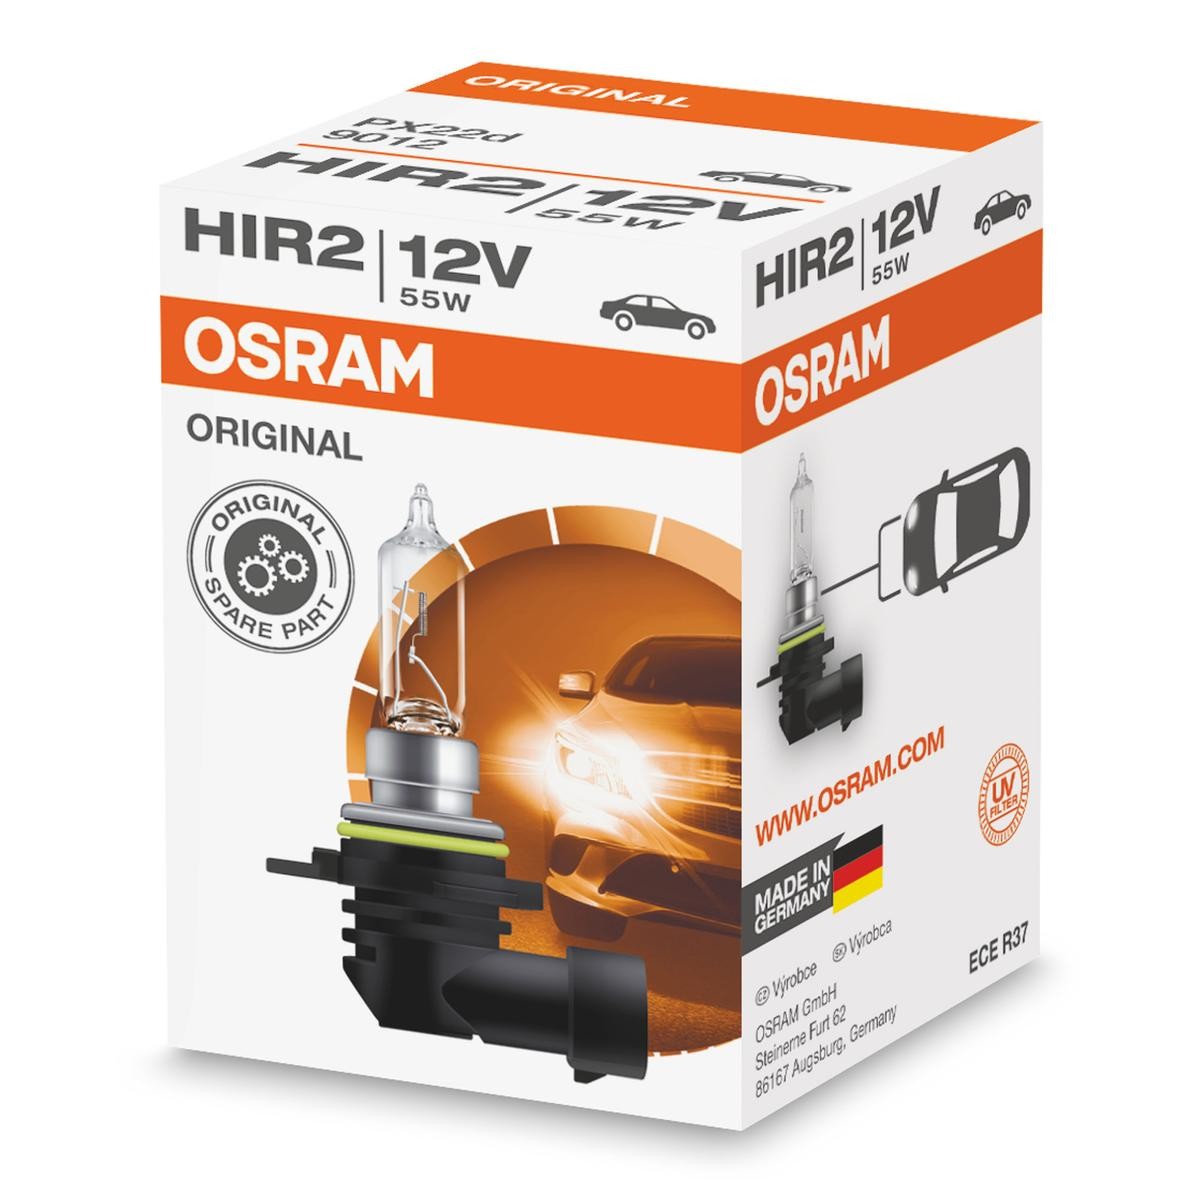 OSRAM 9012 Gloeilamp koplamp HIR2 12V 55W3200K Halogeen ORIGINAL